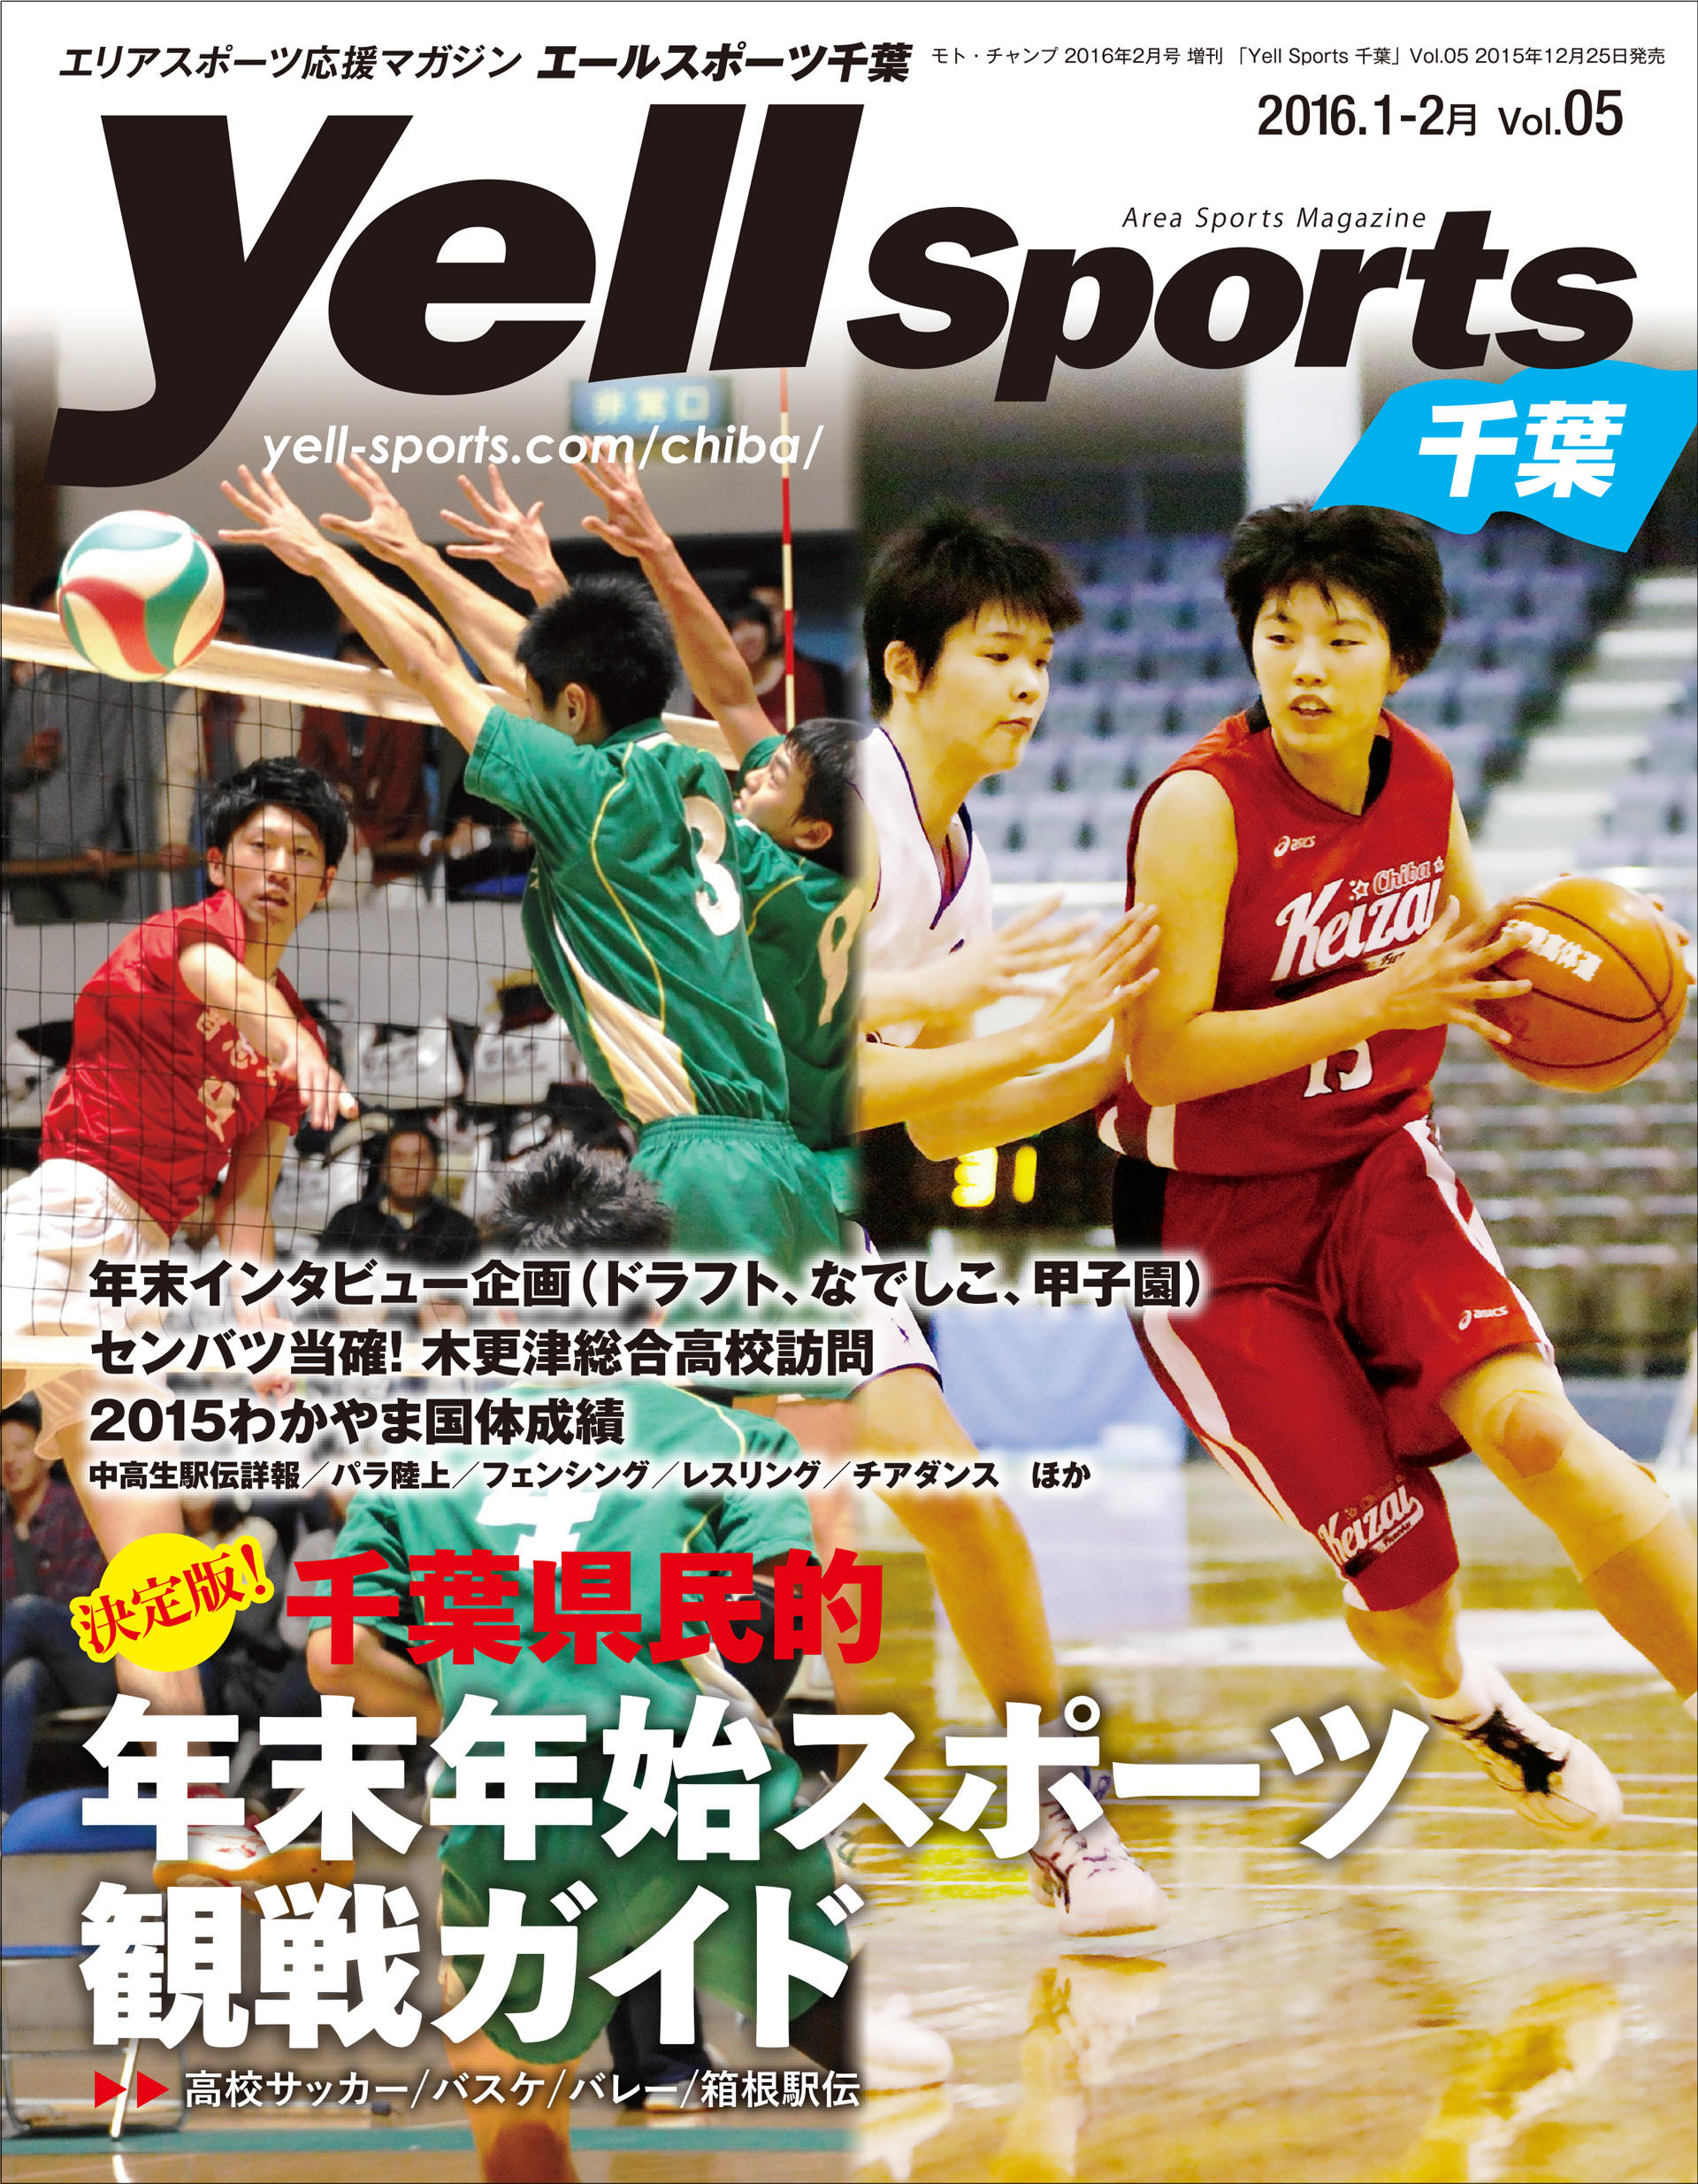 http://yell-sports.com/chiba/article/2016/ysc_H1.jpg